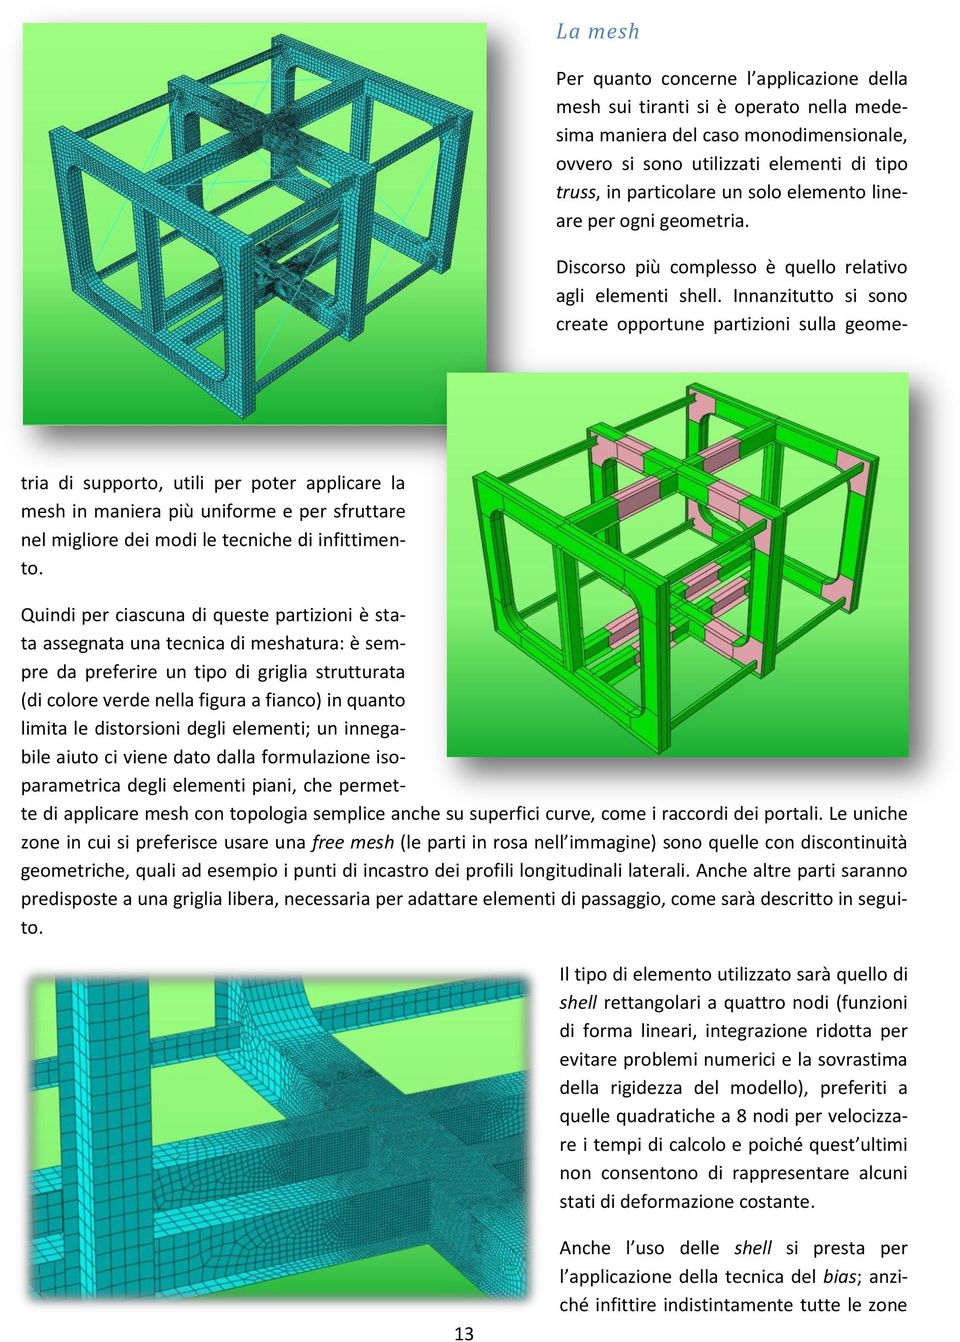 Innanzitutto si sono create opportune partizioni sulla geometria di supporto, utili per poter applicare la mesh in maniera più uniforme e per sfruttare nel migliore dei modi le tecniche di